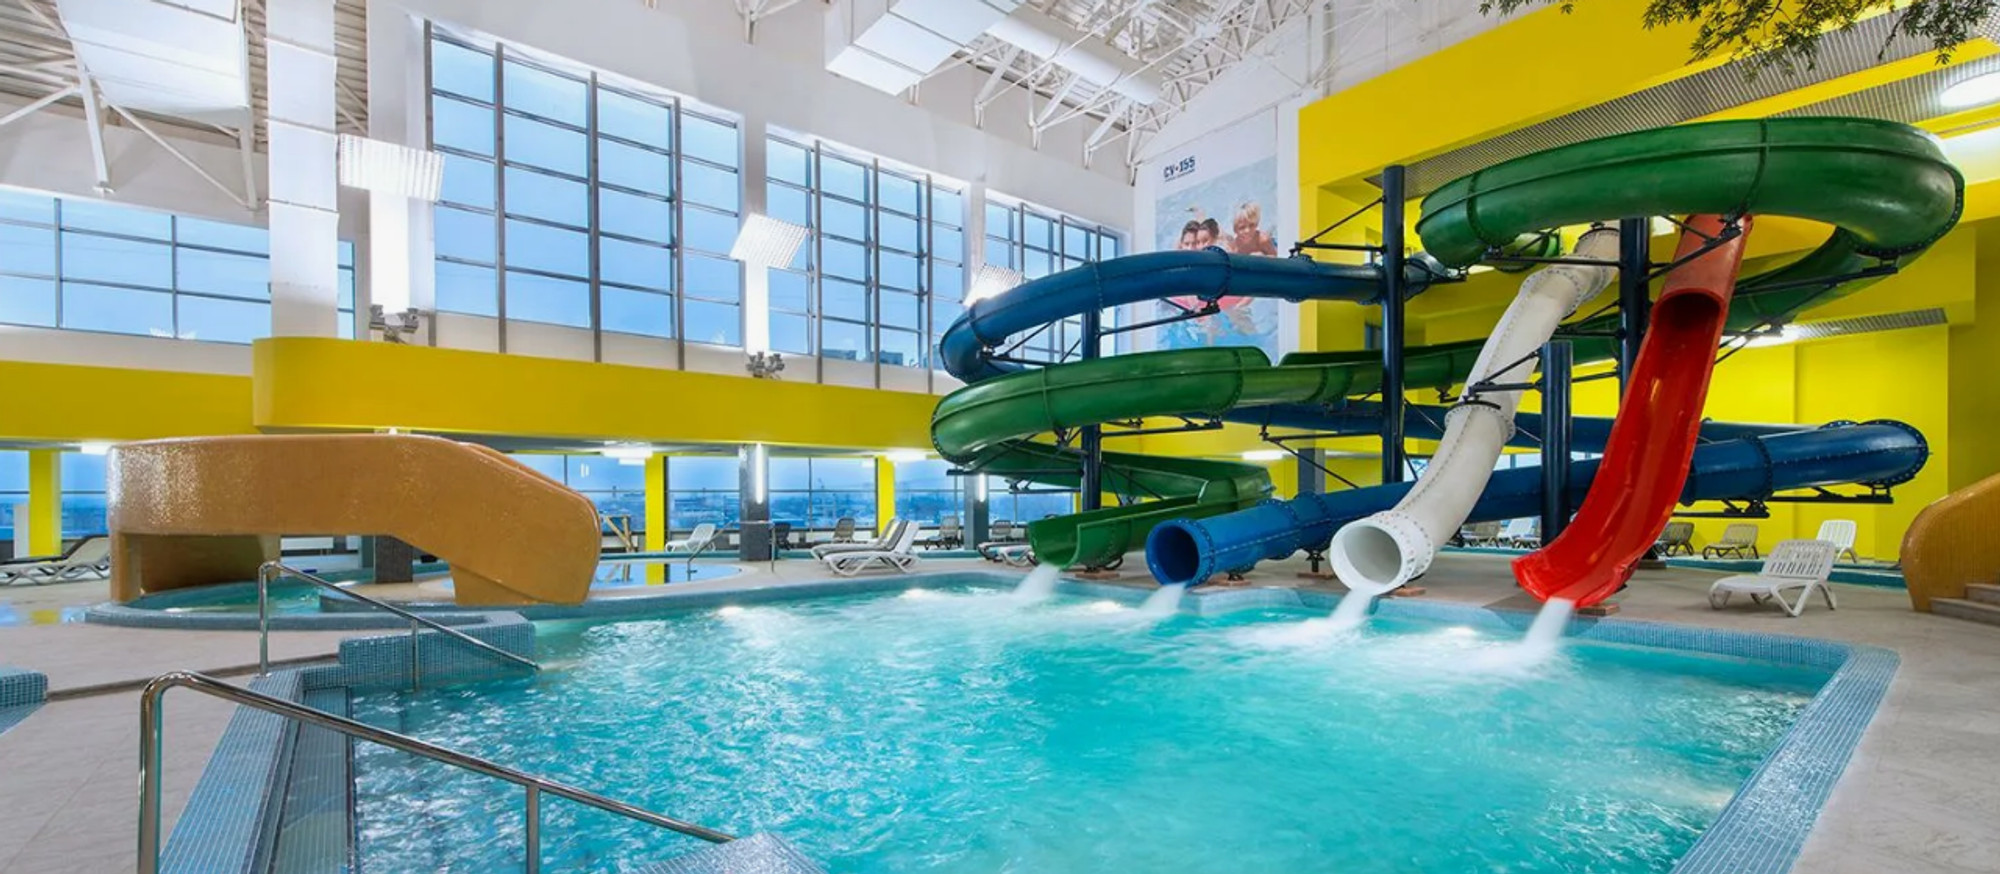 ТОП 5 отелей с аквапарком для детей в Подмосковье